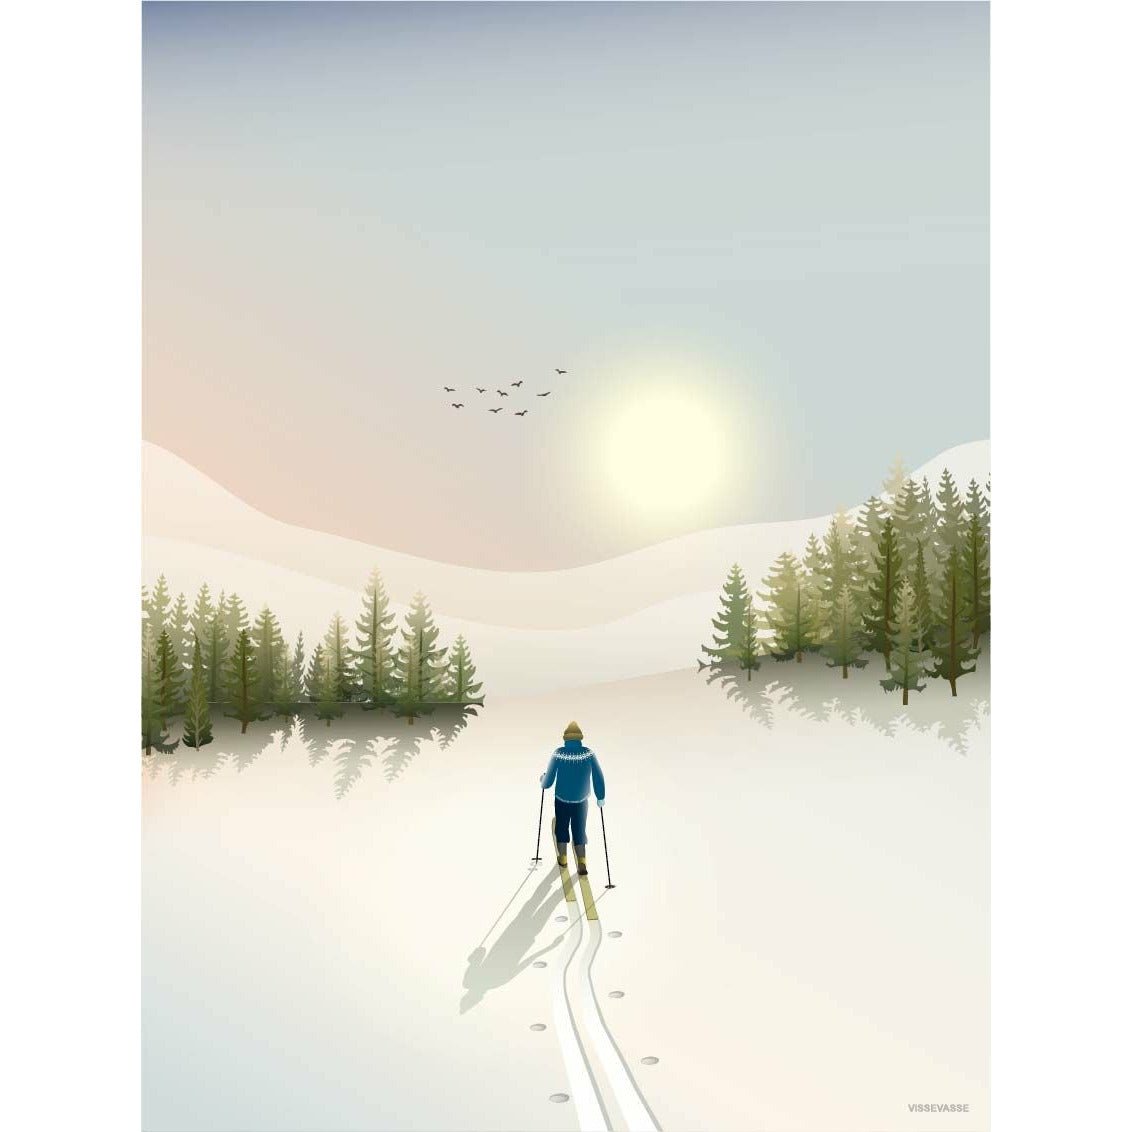 Póster de esquí de cross country Vissevasse, 15x21 cm